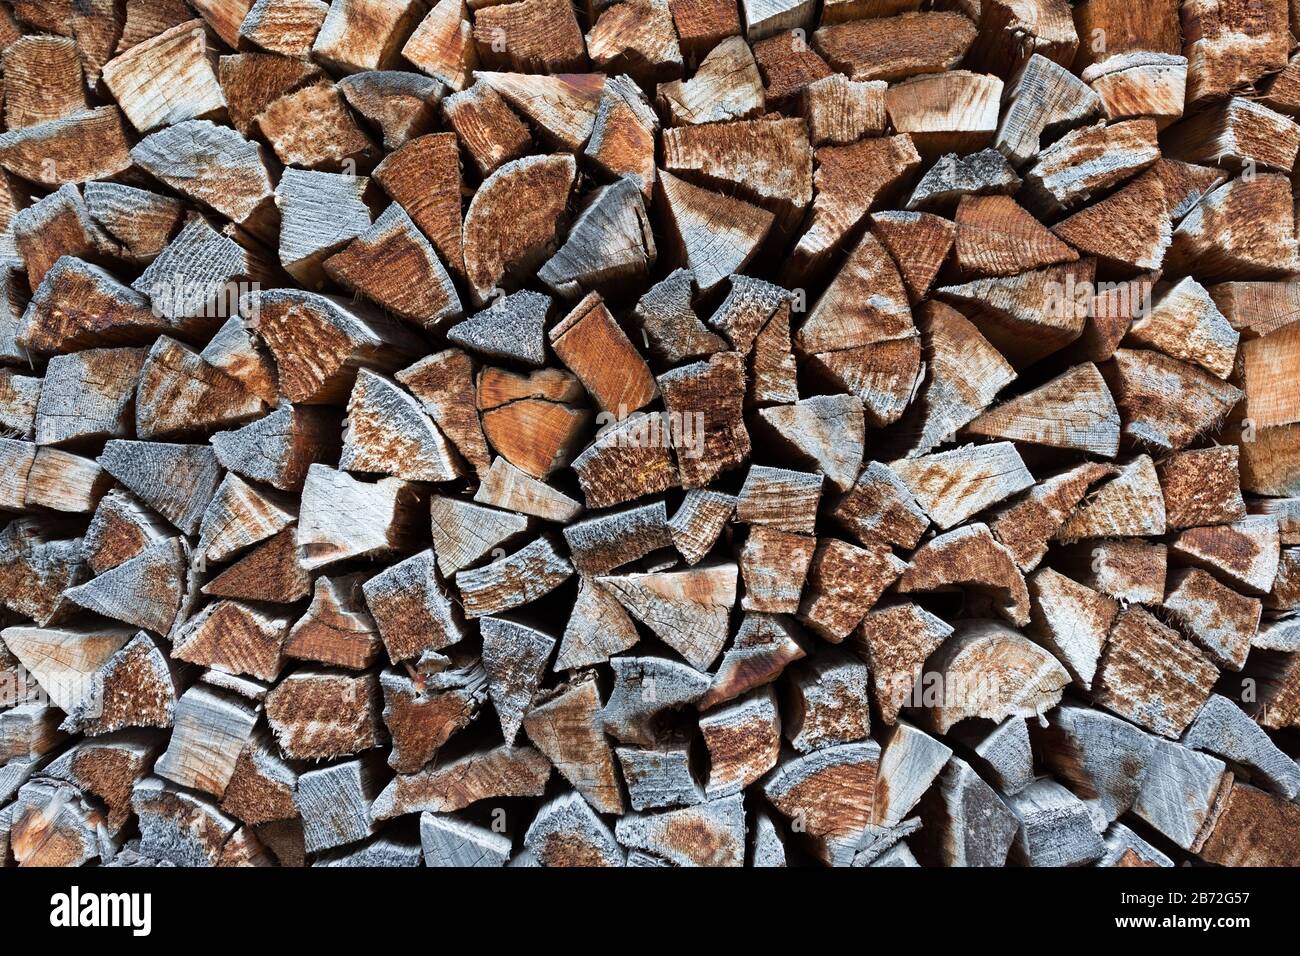 Isolierte Nahaufnahme von gestapeltem Brandholz/geschnittenes Holz - gehockt gegen eine Wand. Die meisten Protokolle haben eine Dreiecksform. Symbol für Wärme, Wärme, Winterzeit. Stockfoto